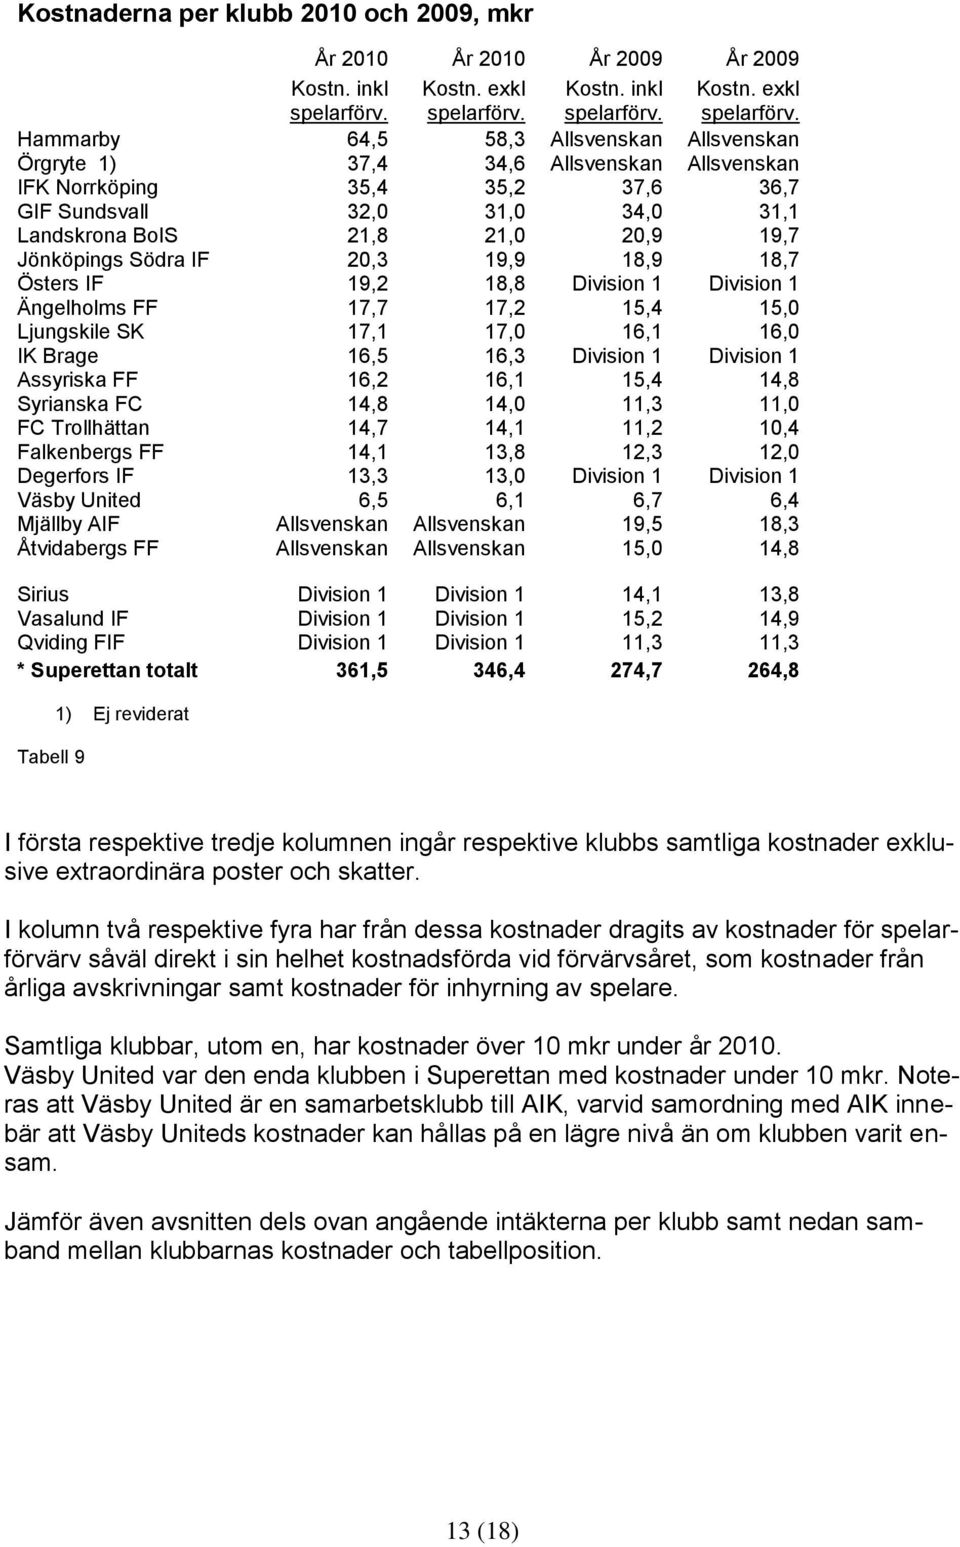 Hammarby 64,5 58,3 Allsvenskan Allsvenskan Örgryte 1) 37,4 34,6 Allsvenskan Allsvenskan IFK Norrköping 35,4 35,2 37,6 36,7 GIF Sundsvall 32,0 31,0 34,0 31,1 Landskrona BoIS 21,8 21,0 20,9 19,7